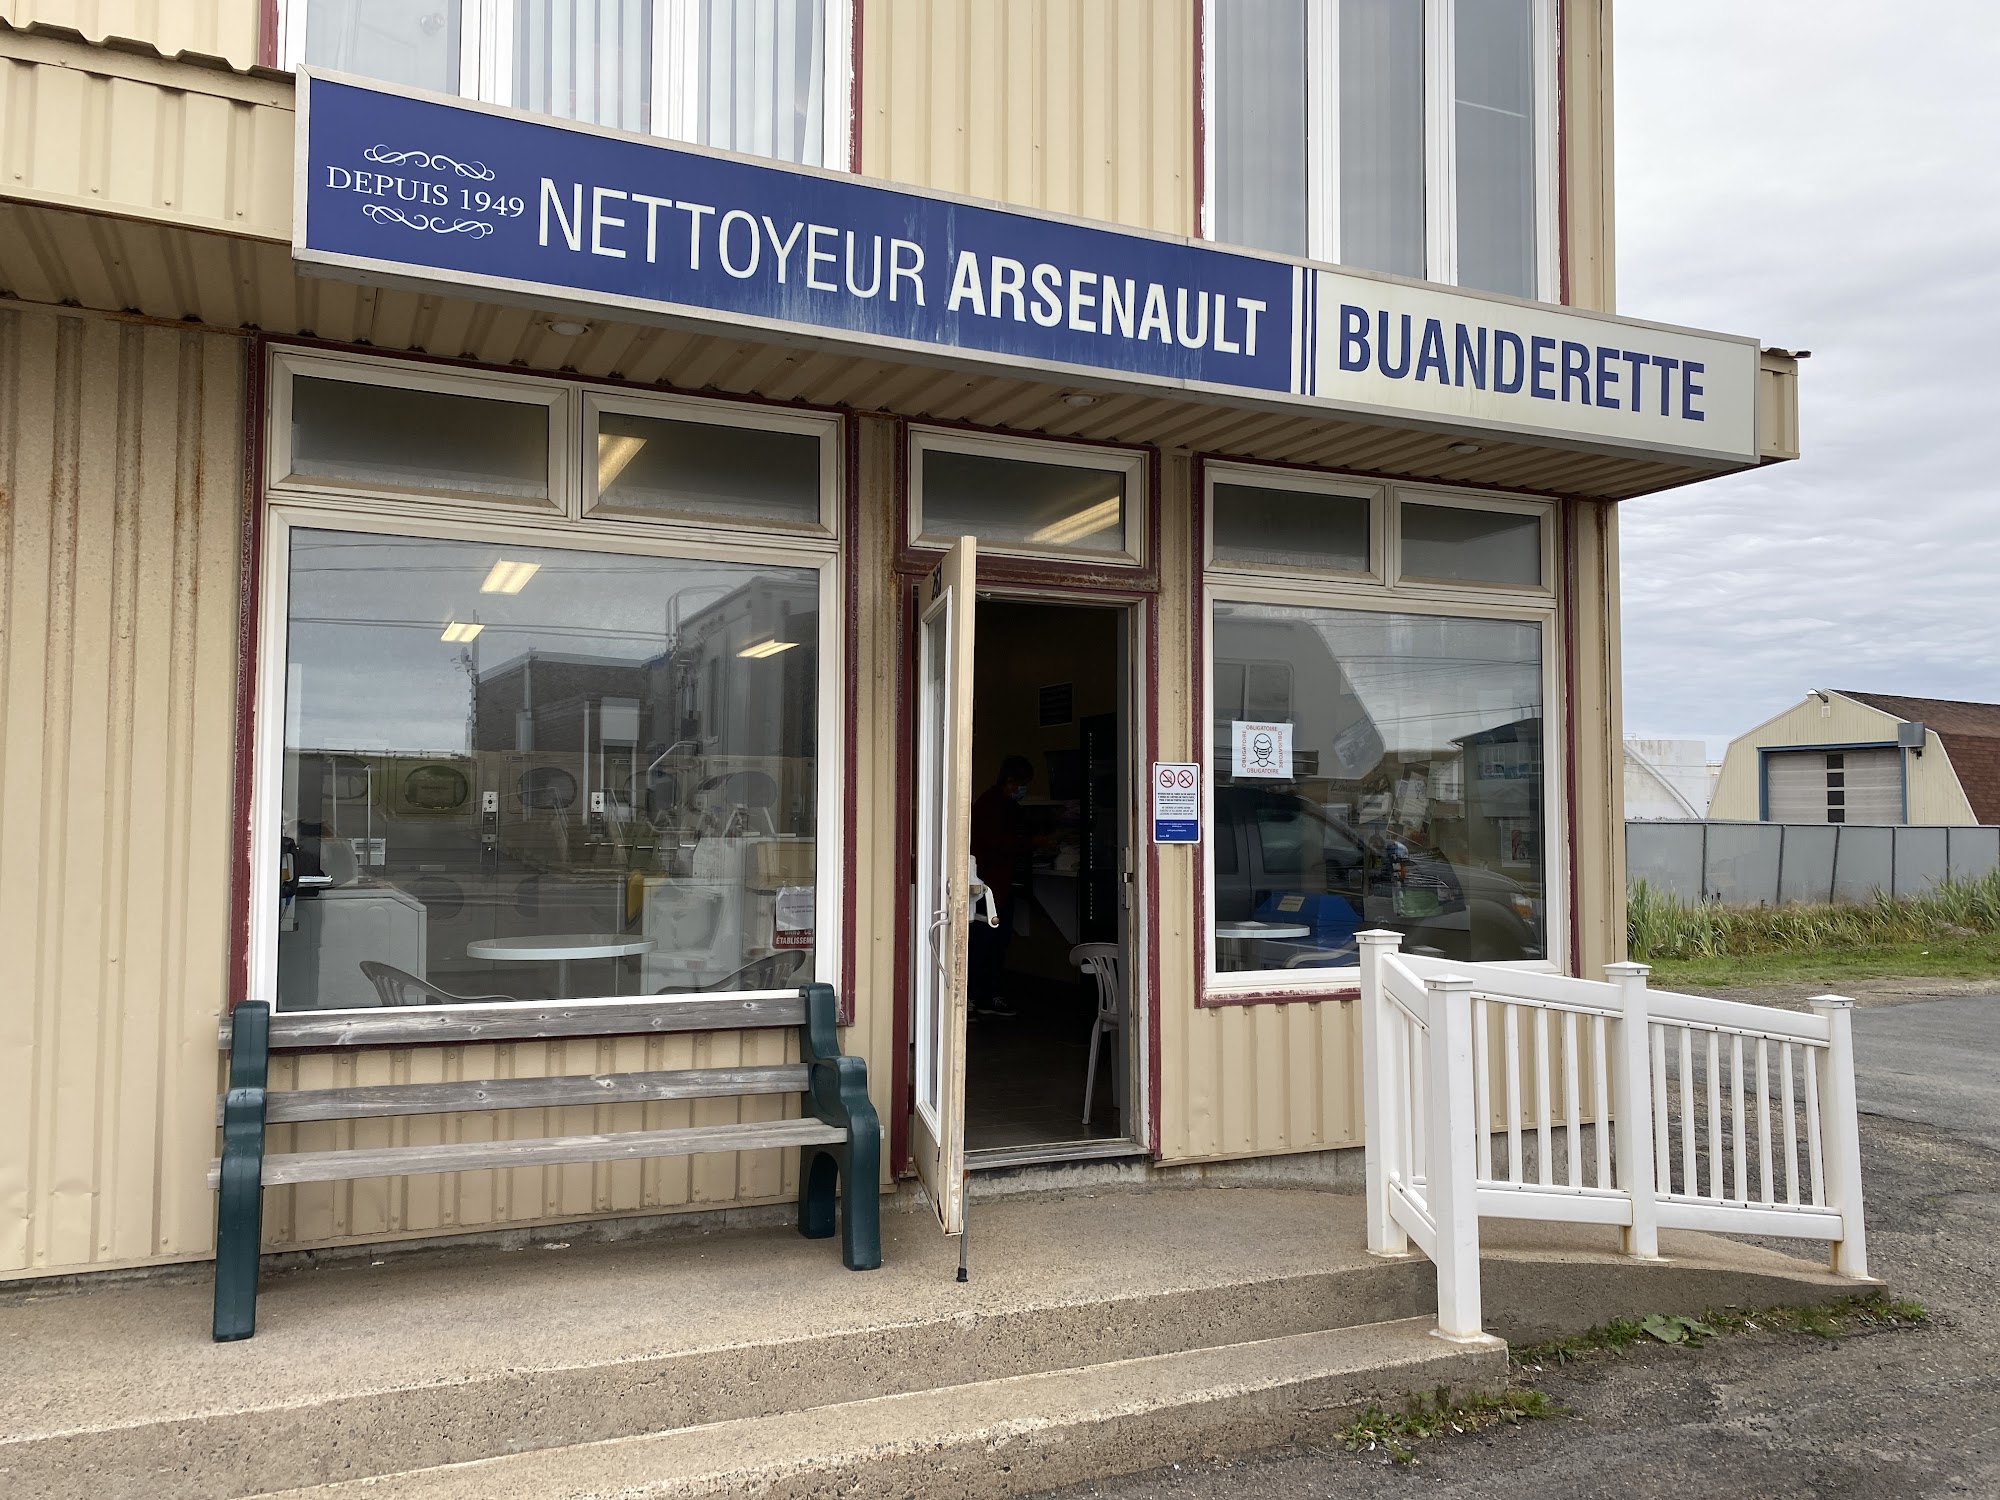 Buanderie libre-service - Buanderette (La) 267 Chem. Principal, Cap-aux-Meules Quebec G4T 1R8